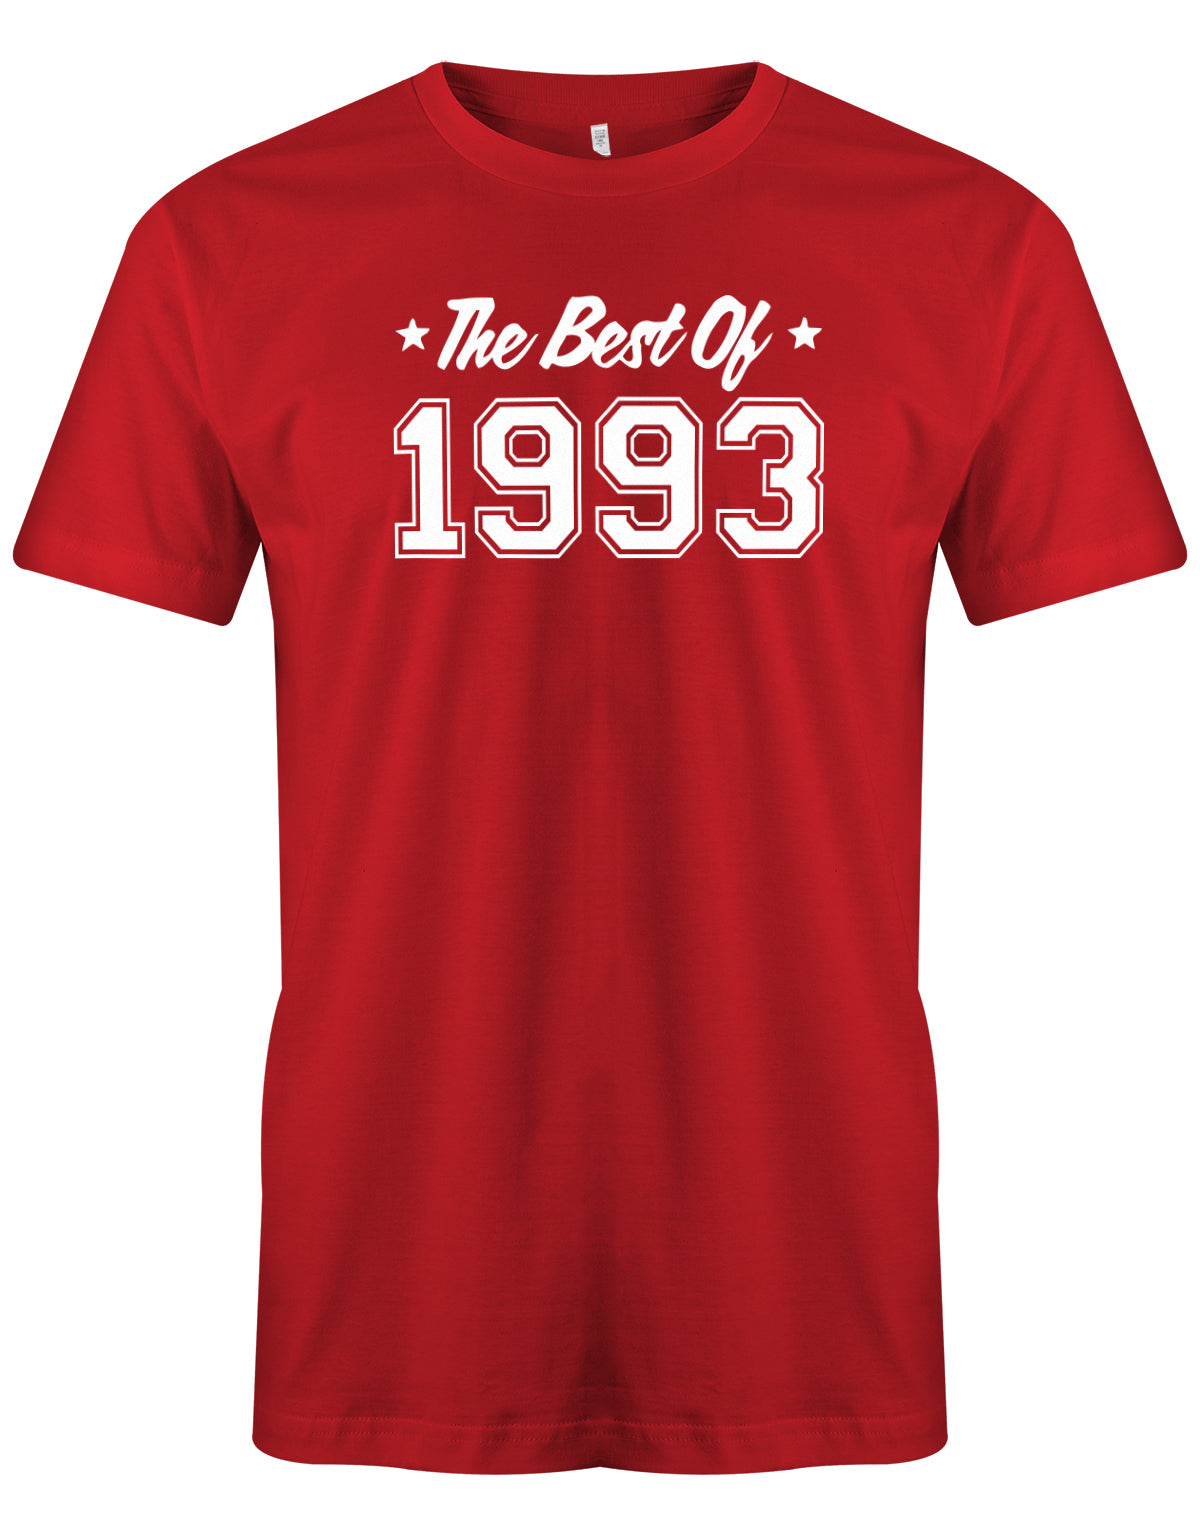 Cooles T-Shirt zum 30 Geburtstag für den Mann Bedruckt mit: The best of 1993 - das beste aus 1993. Das 30 Geburtstag Männer Shirt Lustig ist eine super Geschenkidee für alle 30 Jährigen. Man wird nur einmal 30 Jahre. 30 geburtstag Männer Shirt ✓ 1993 geburtstag shirt ✓ t-shirt zum 30 geburtstag mann ✓ shirt 30 mann  Rot